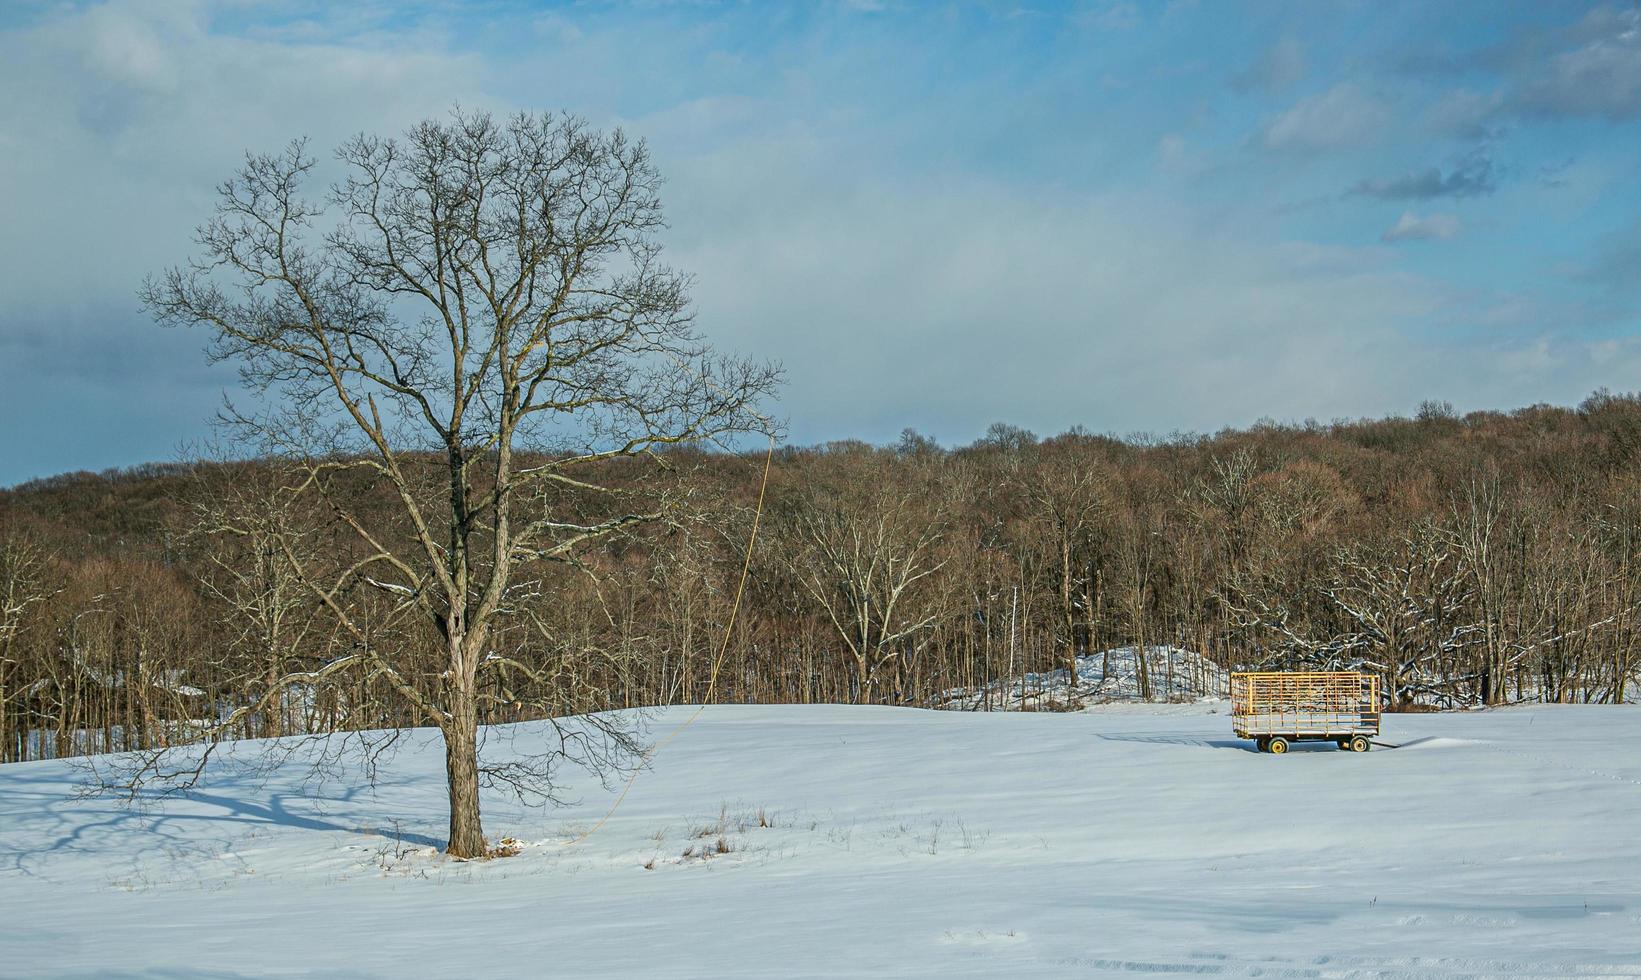 Arbre dans le champ agricole couvert de neige avec panier photo